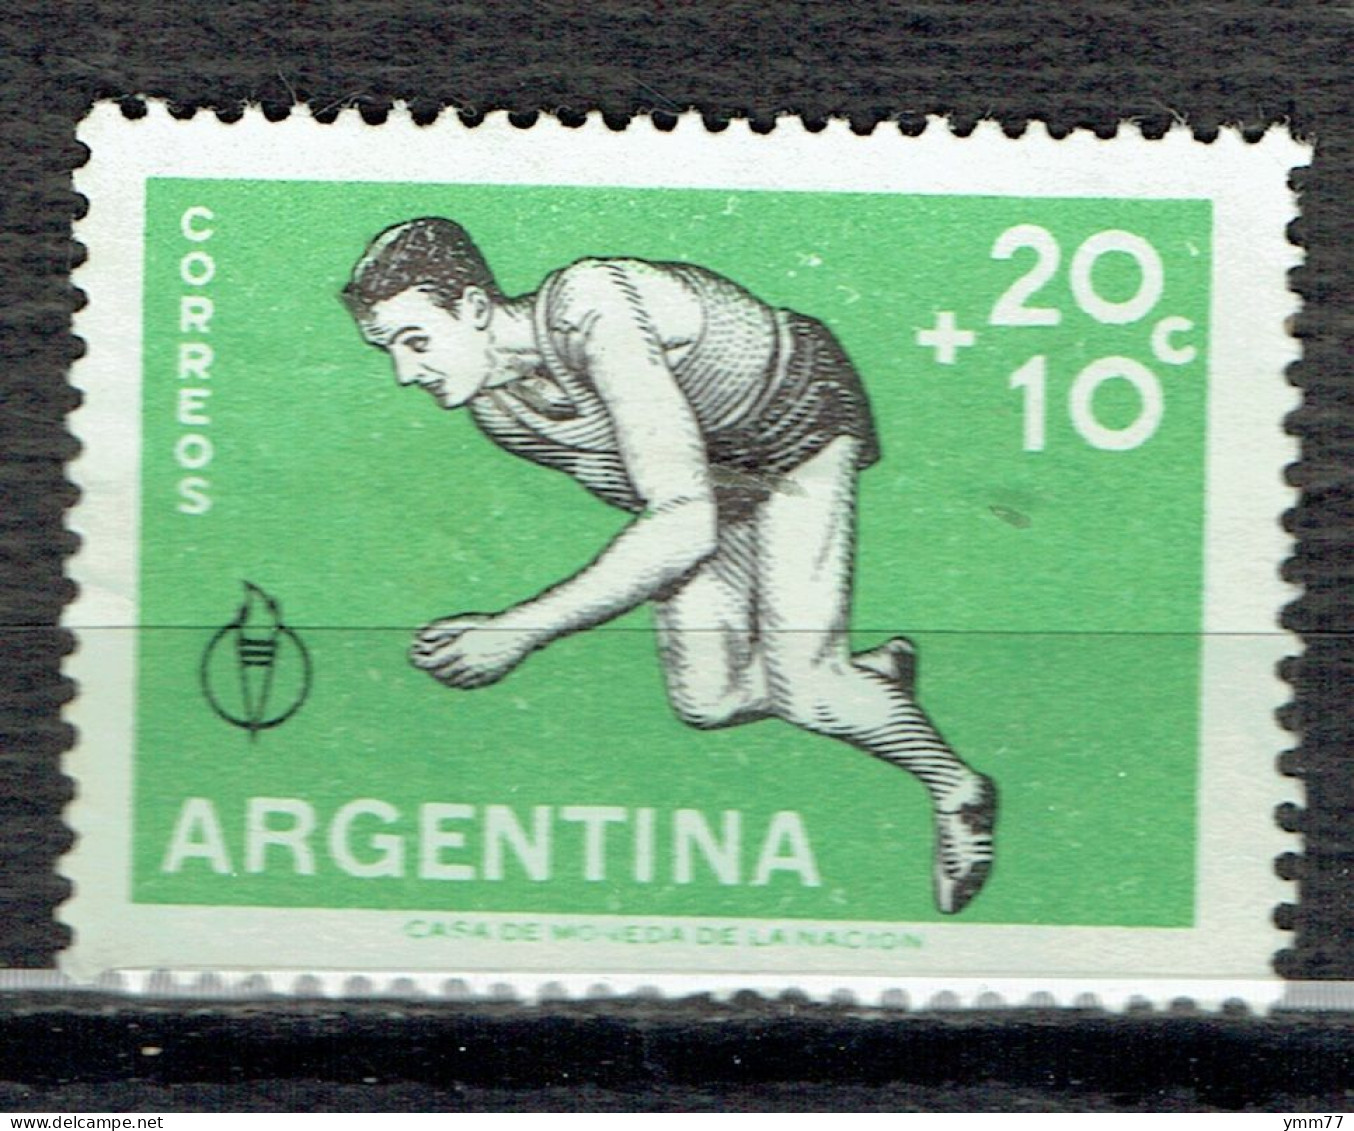 3èmes Jeux Panaméricains à Chicago : Athlétisme - Unused Stamps